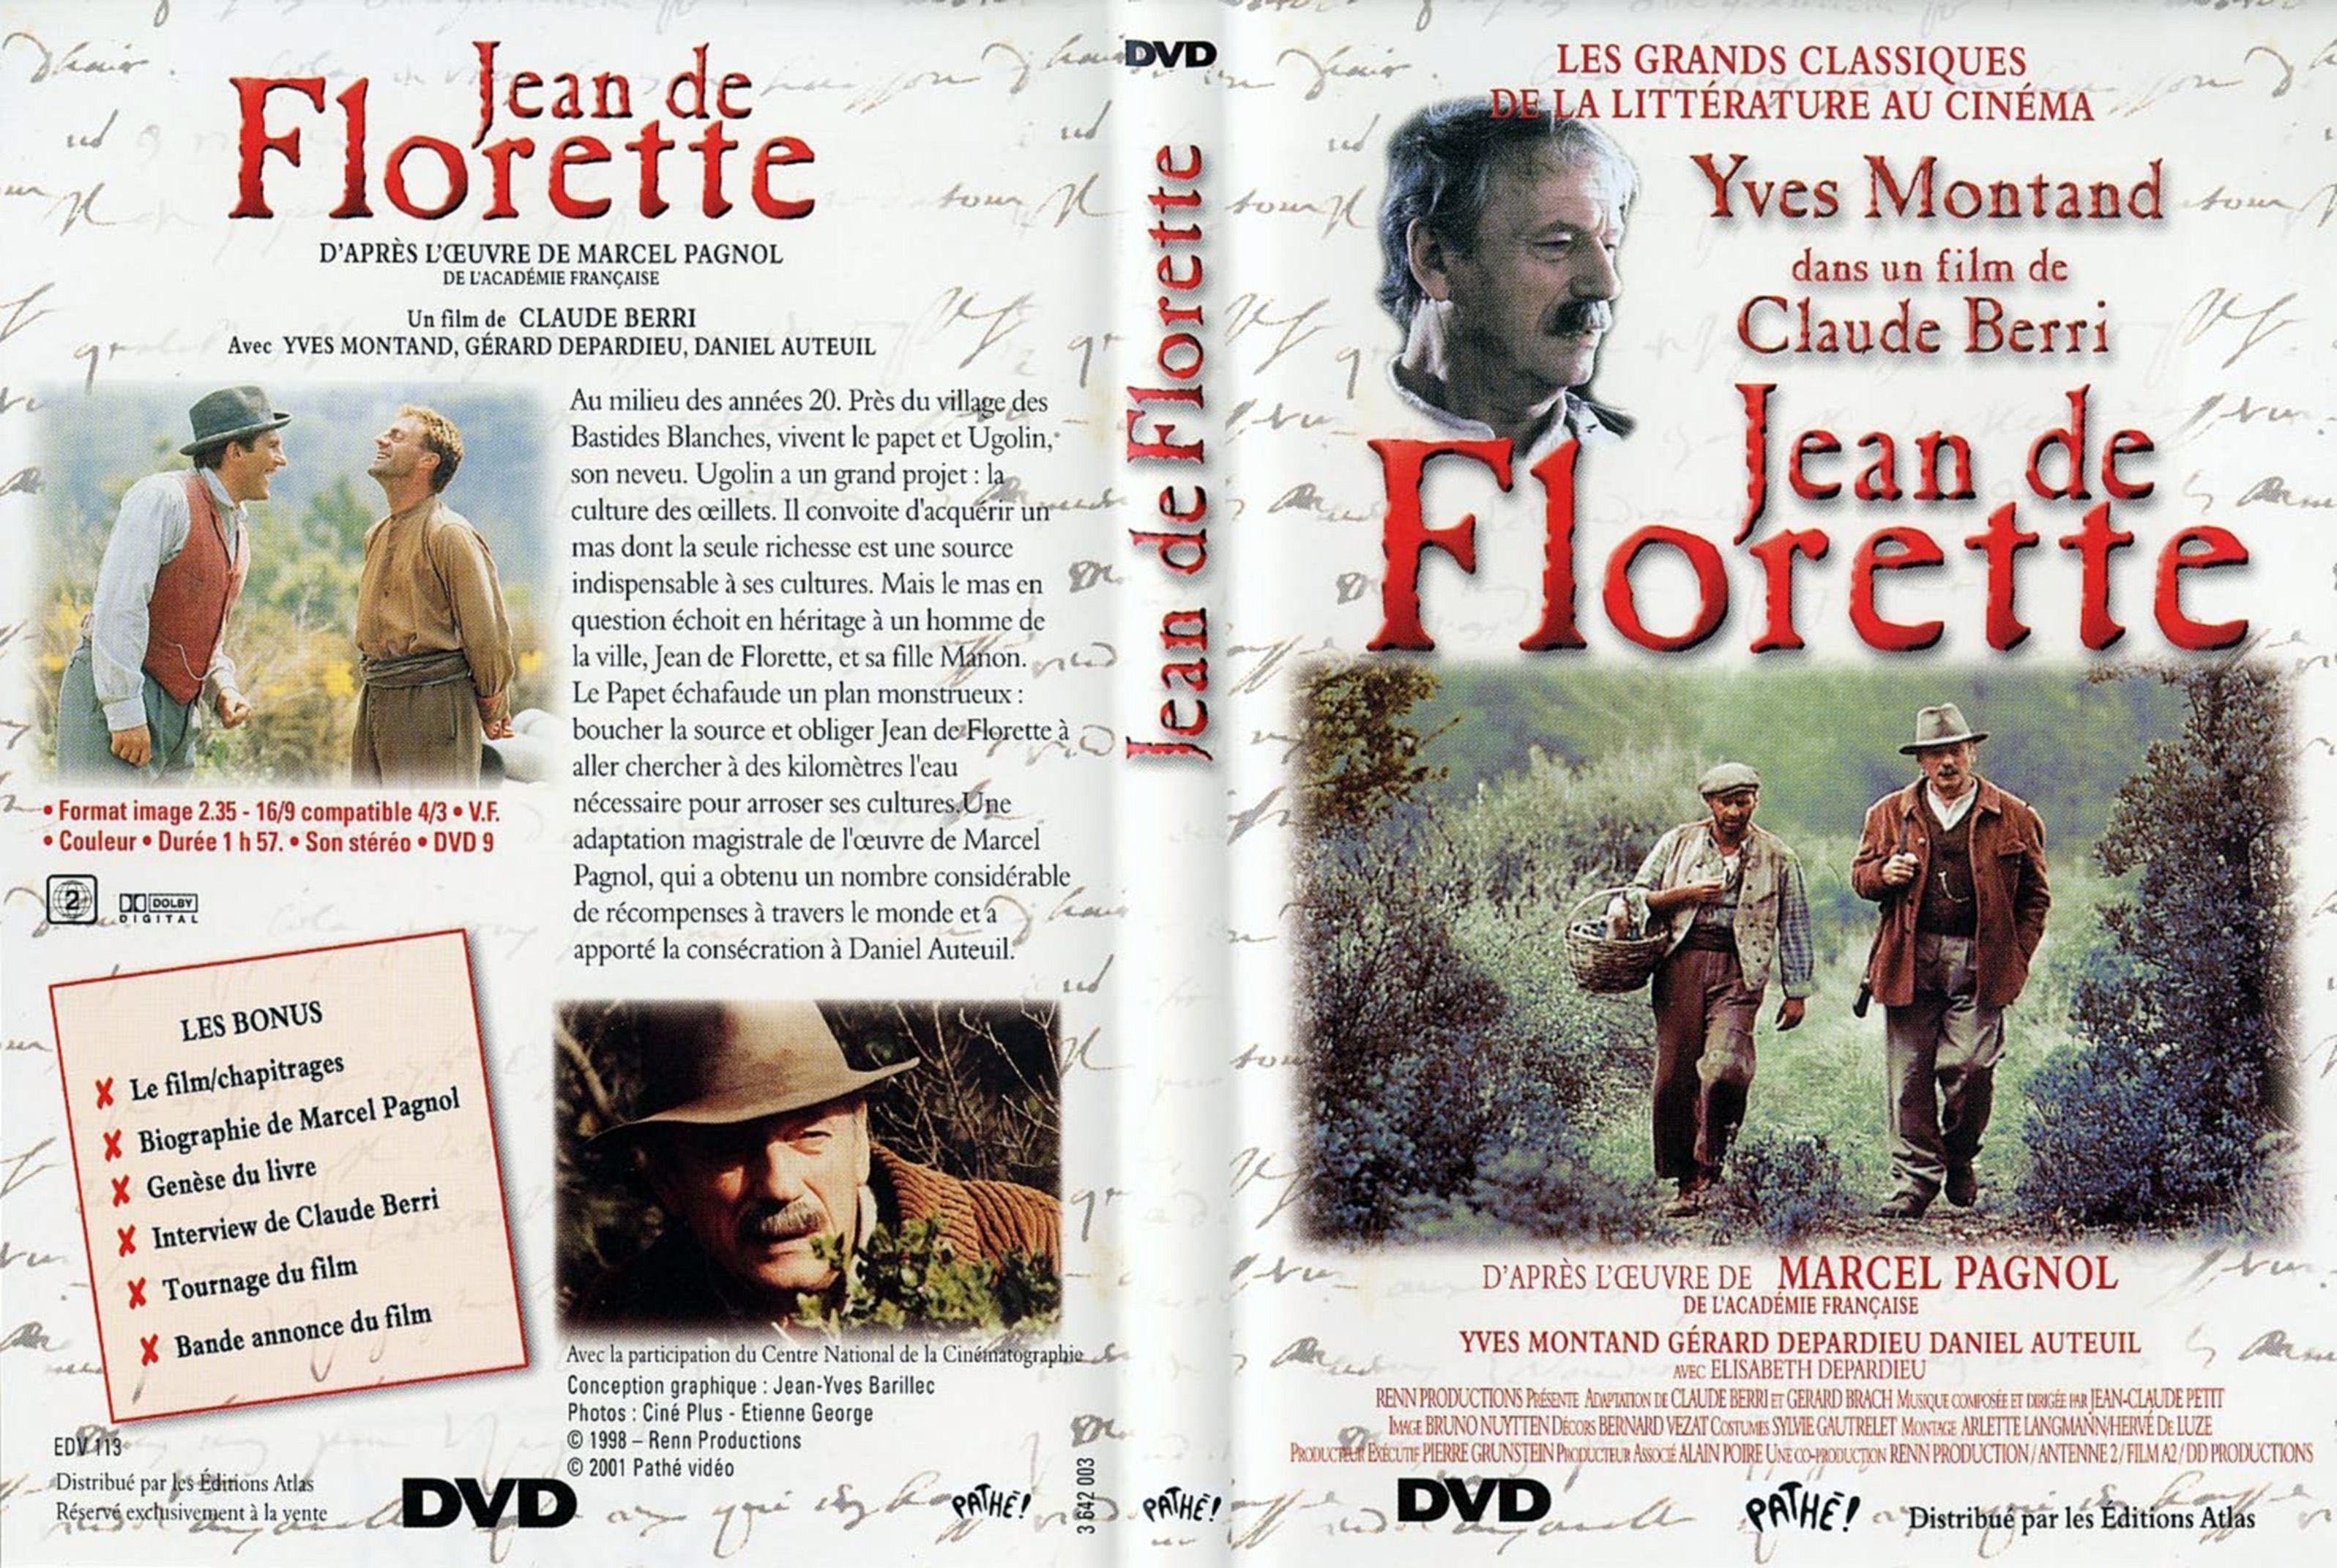 Jaquette DVD Jean de florette v2